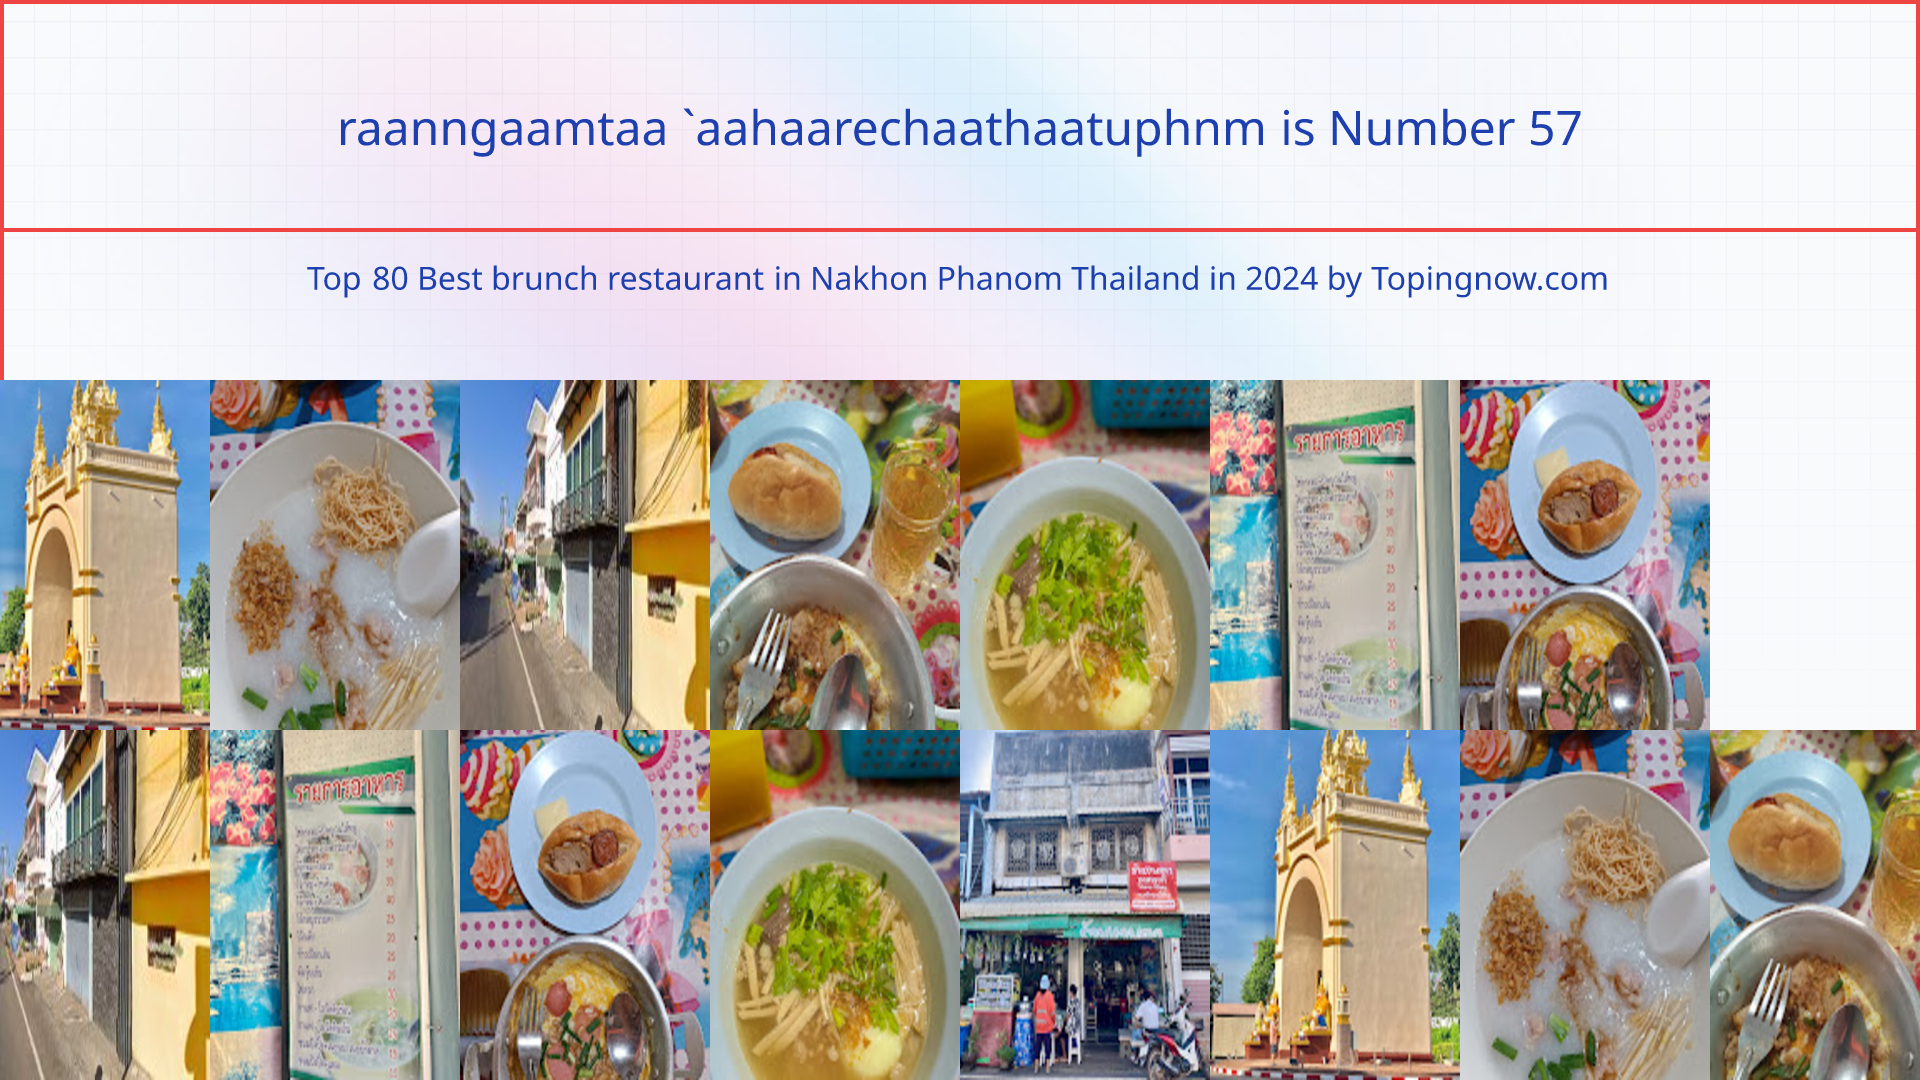 raanngaamtaa `aahaarechaathaatuphnm: Top 80 Best brunch restaurant in Nakhon Phanom Thailand in 2024